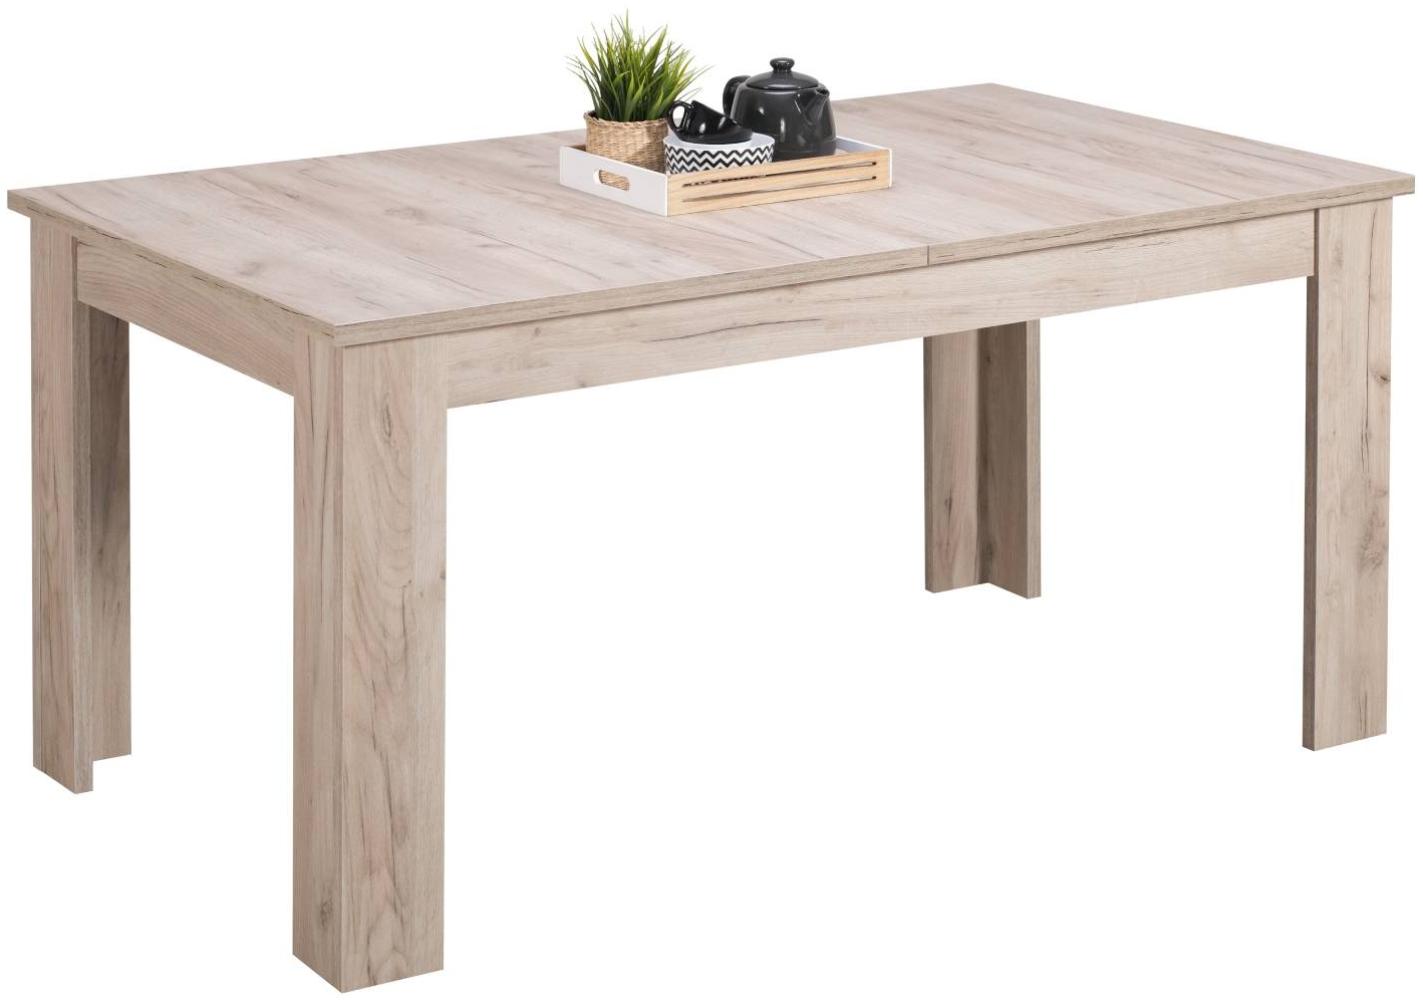 Homestyle4u ausziehbar Holztisch, Holz grau, 160 x 90 cm Bild 1